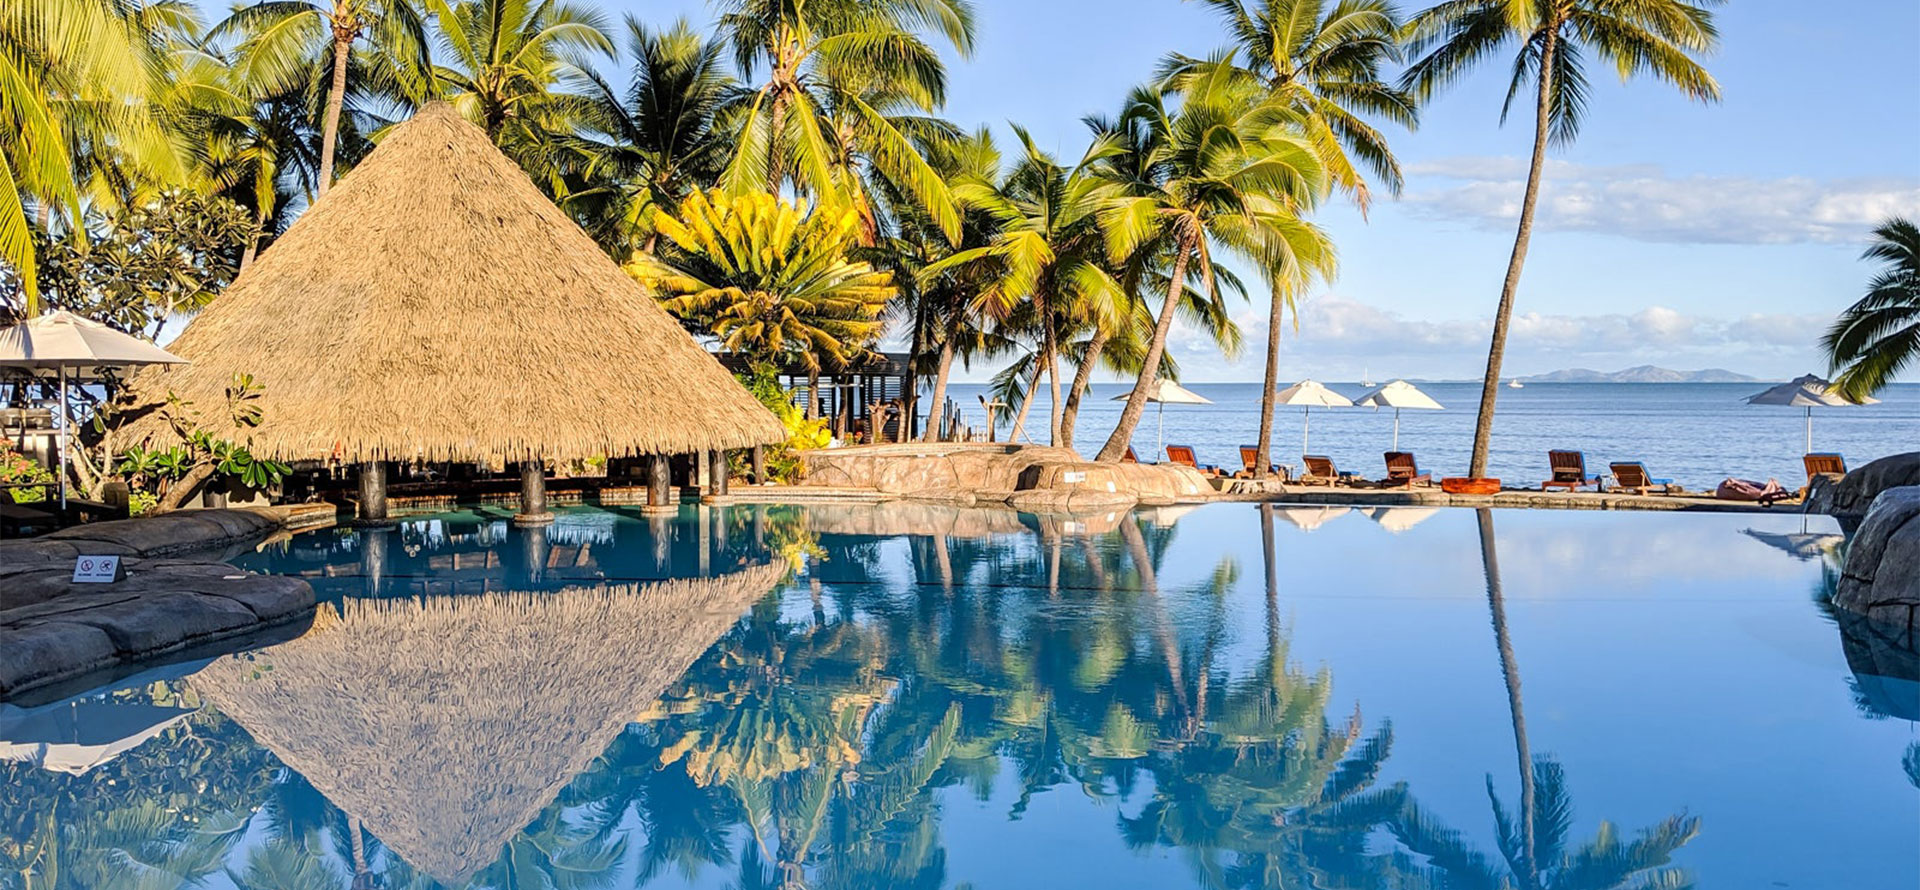 Resort in Fiji.